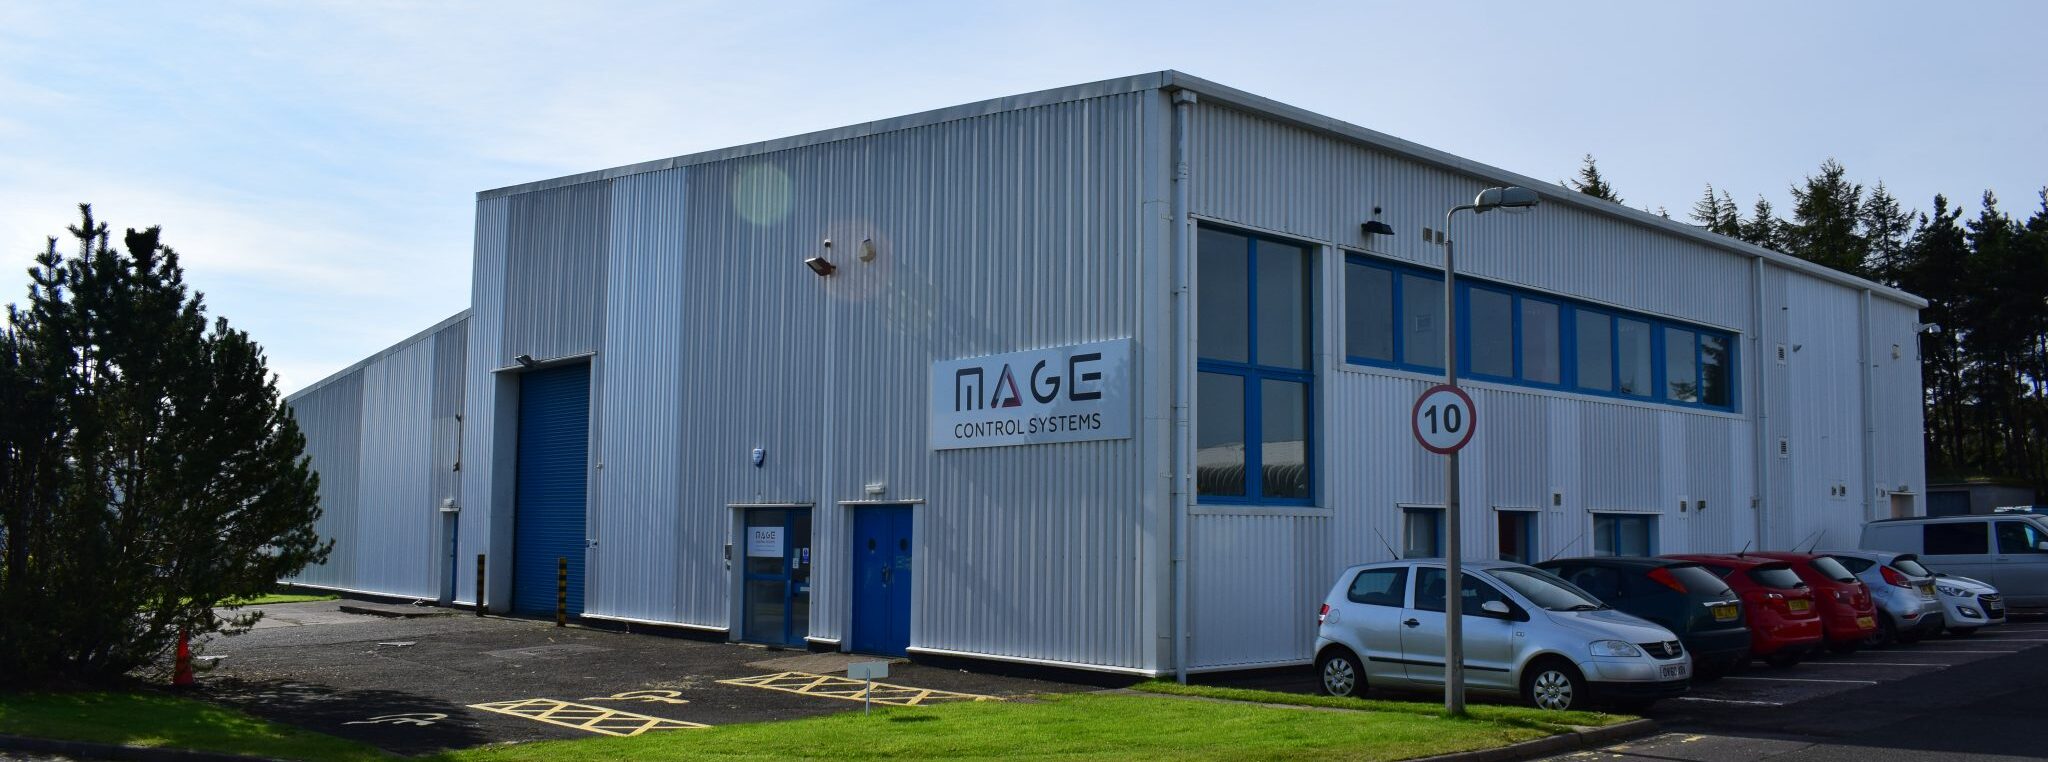 Mage Control Systems premises - Scottish Enterprise Technology Park, East Kilbride